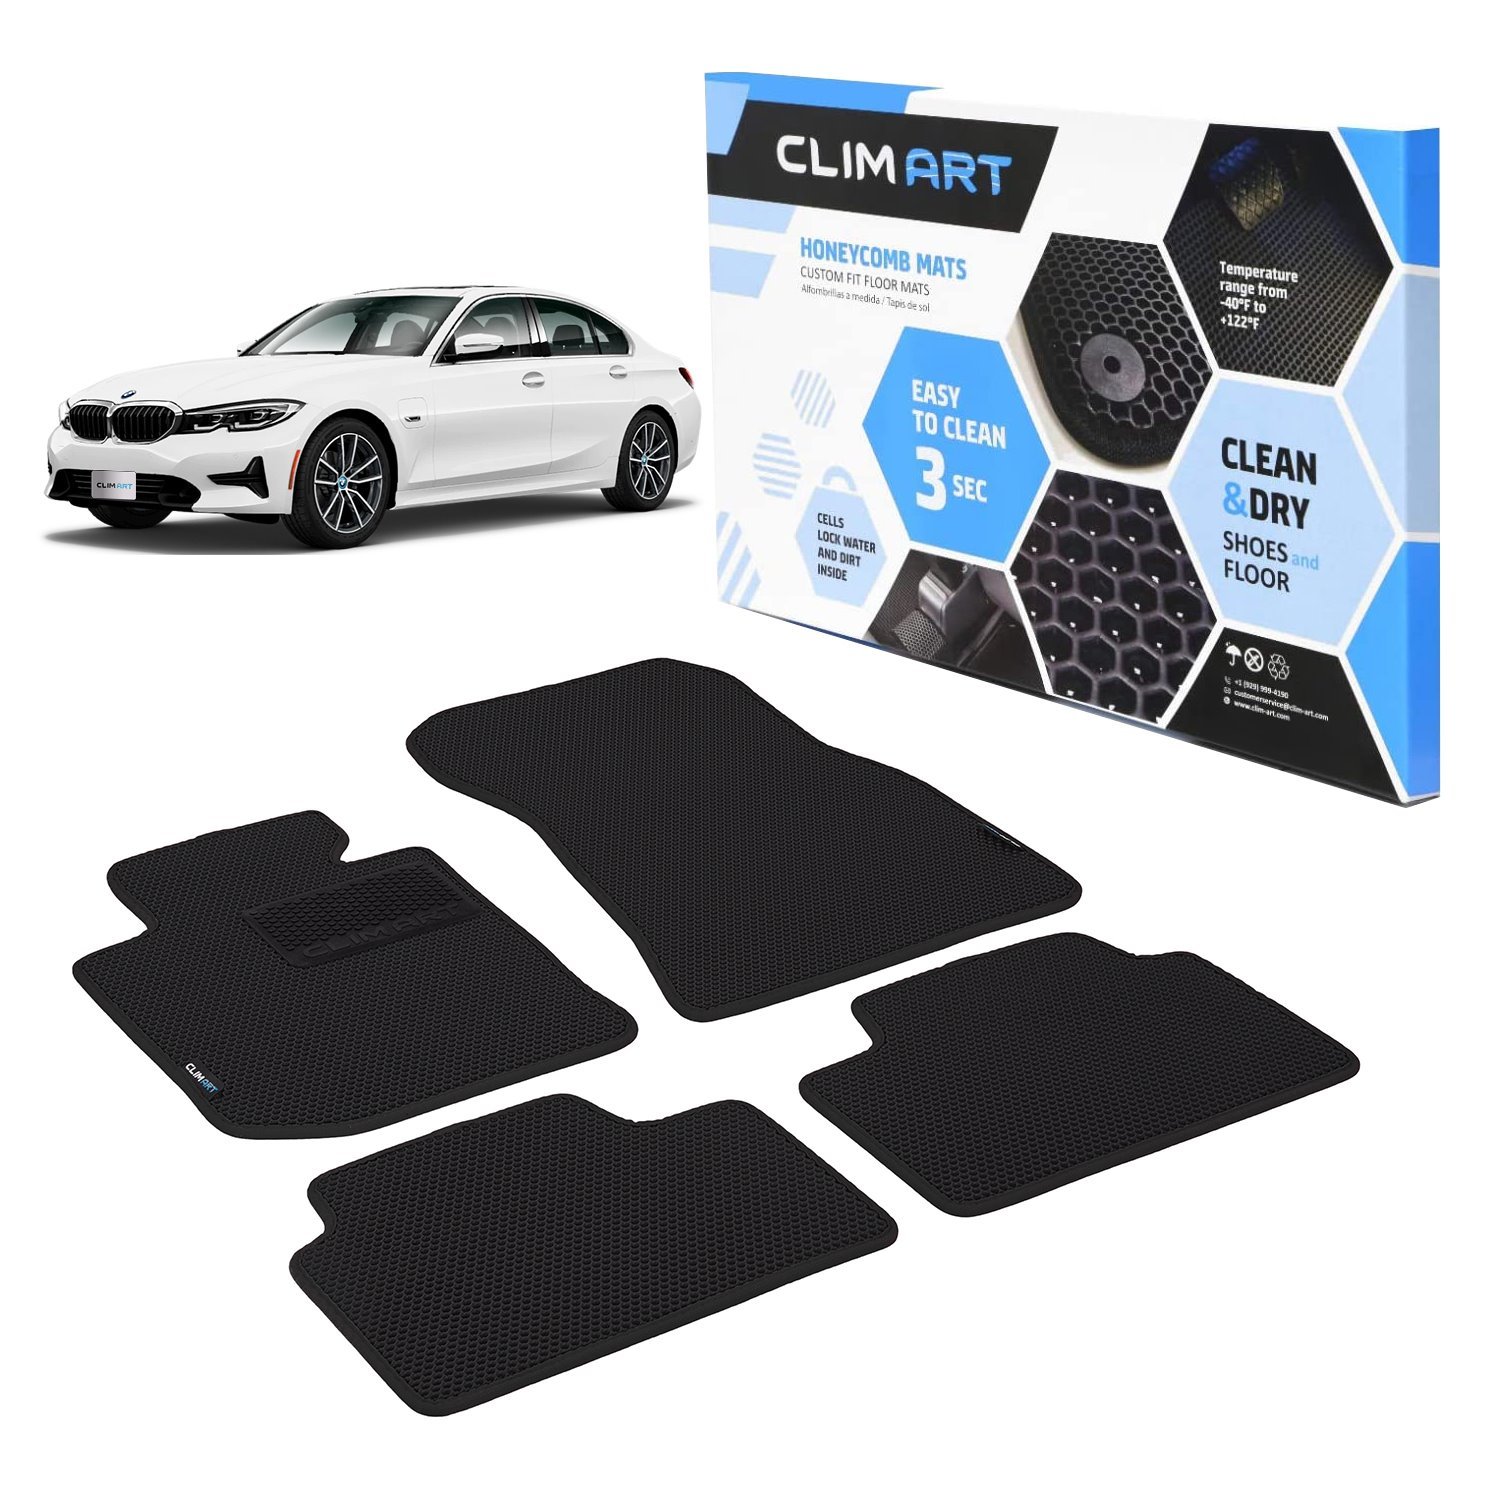 CLIM ART Honeycomb Custom Fit Floor Mats Fits Select BMW 3-Series